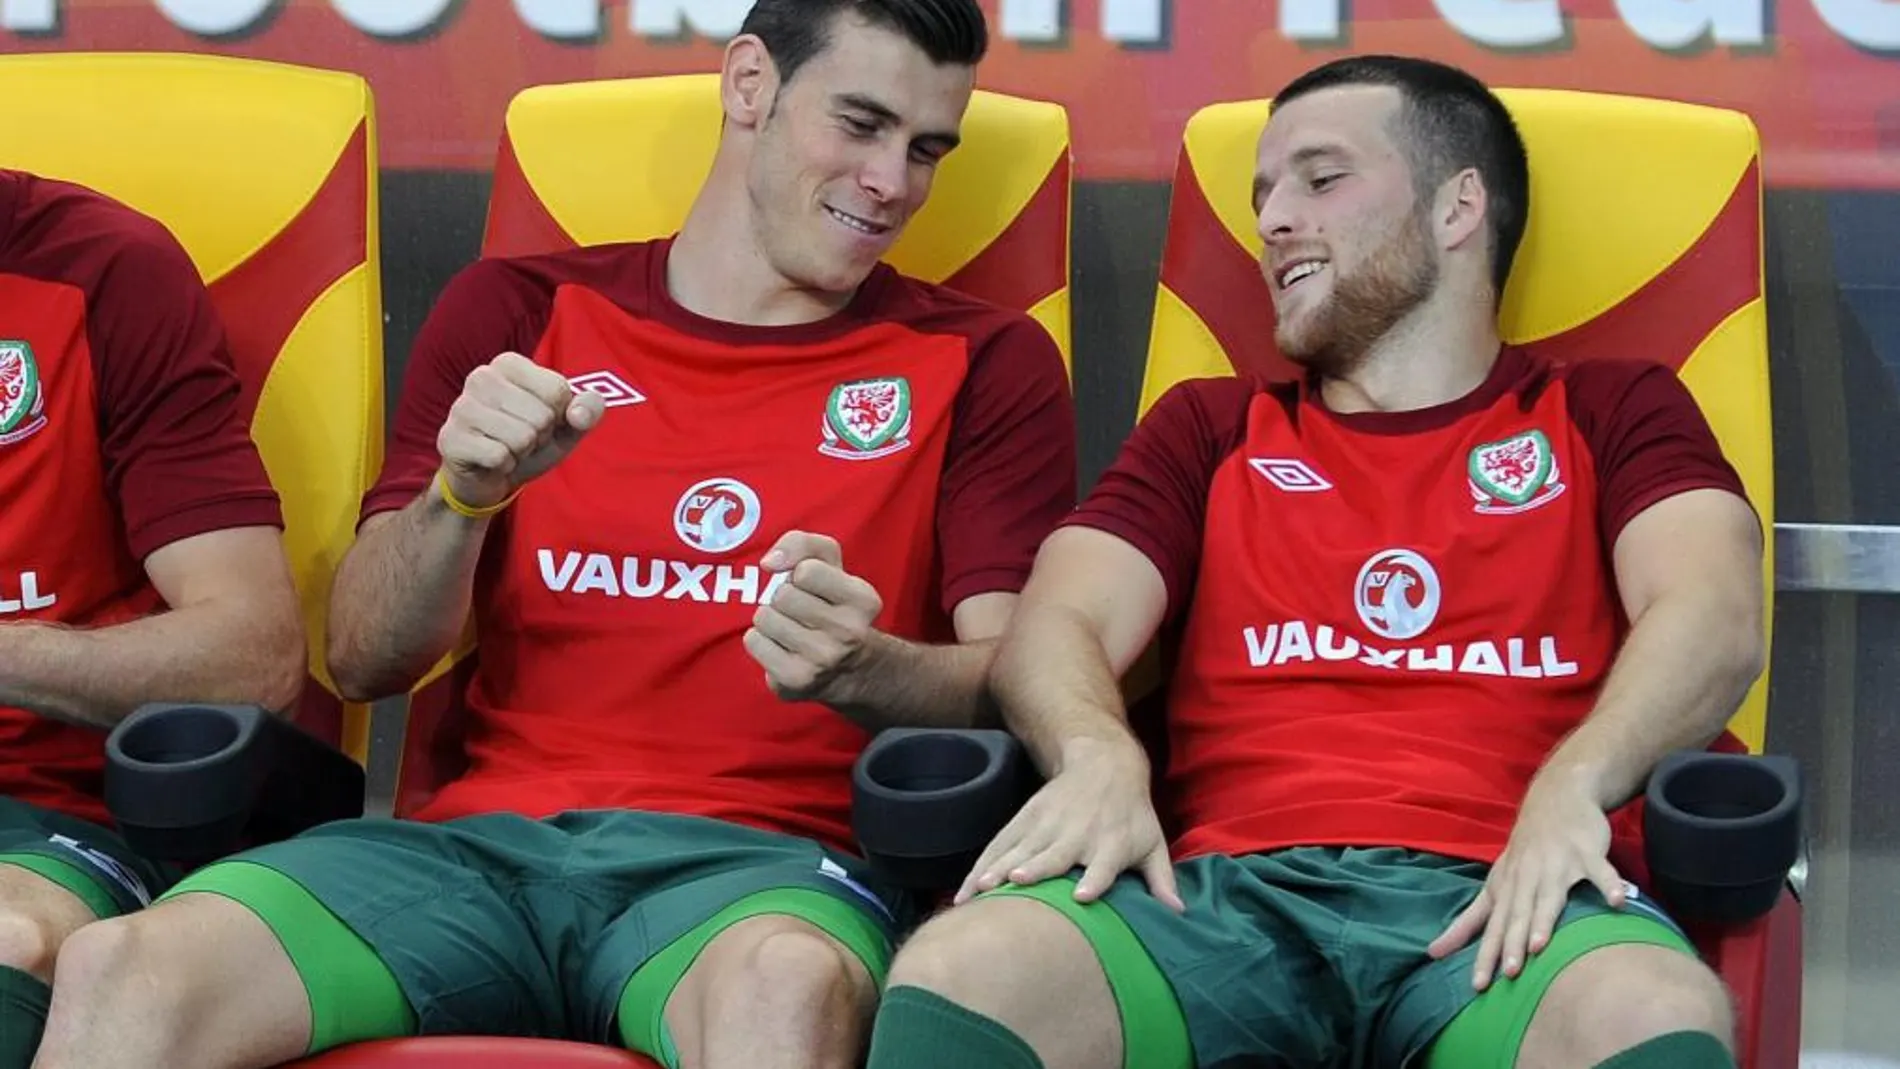 El internacional galés Gareth Bale, quien ha fichado recientemente por el Real Madrid, bromea en el banquillo con un compañero durante el partido Macedonia-Gales